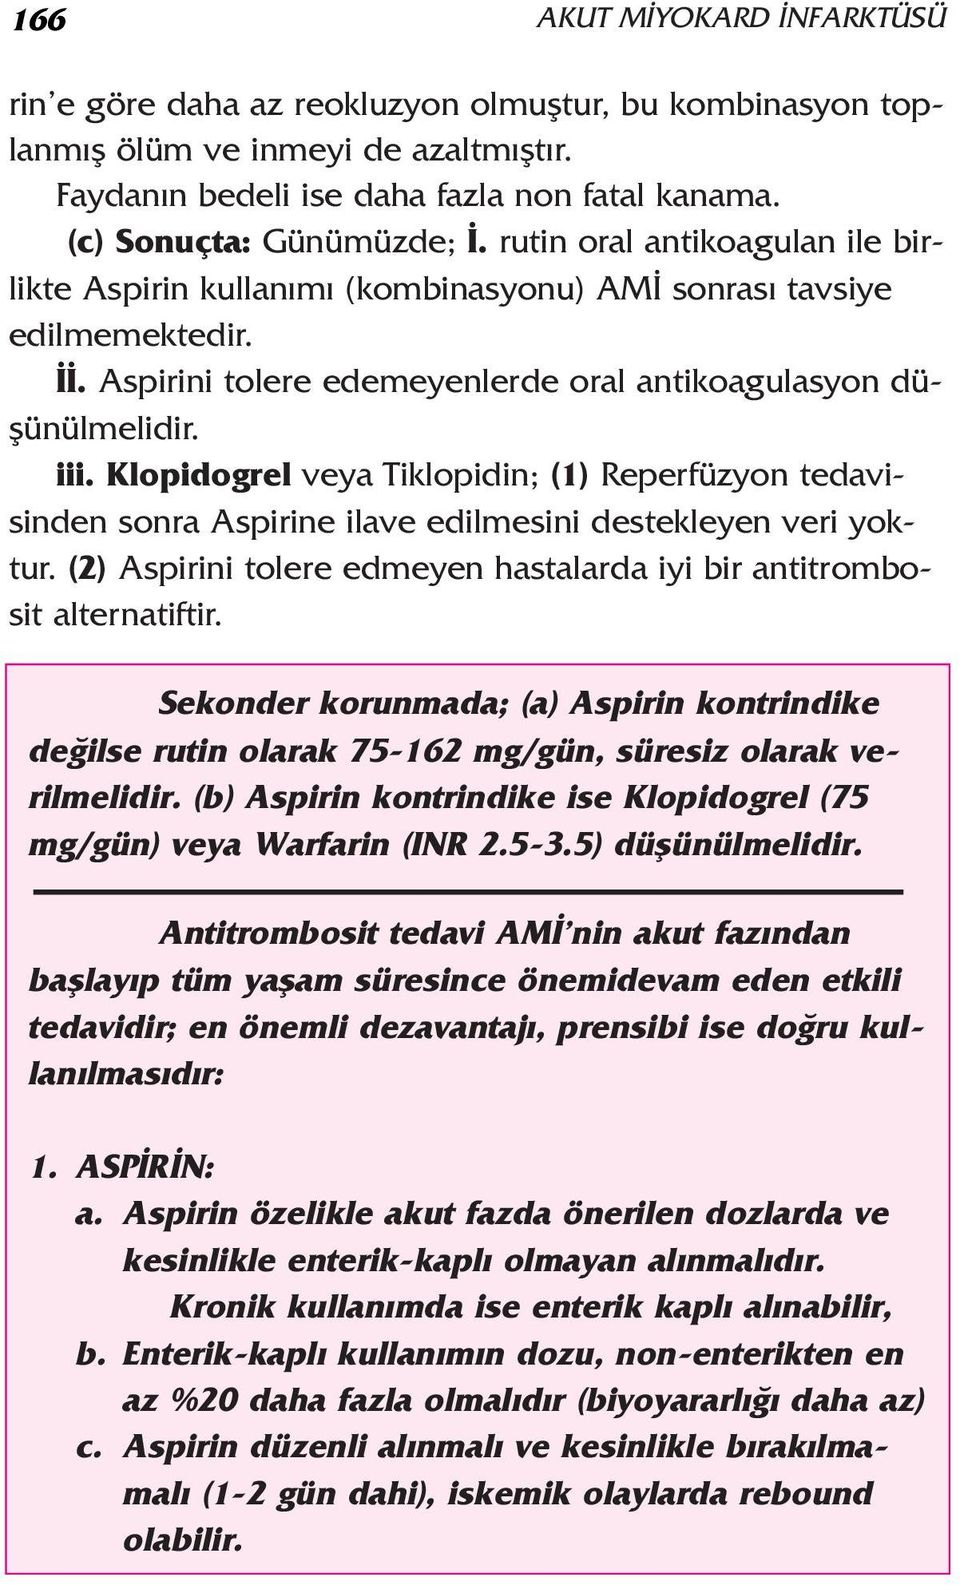 Klopidogrel veya Tiklopidin; (1) Reperfüzyon tedavisinden sonra Aspirine ilave edilmesini destekleyen veri yoktur. (2) Aspirini tolere edmeyen hastalarda iyi bir antitrombosit alternatiftir.